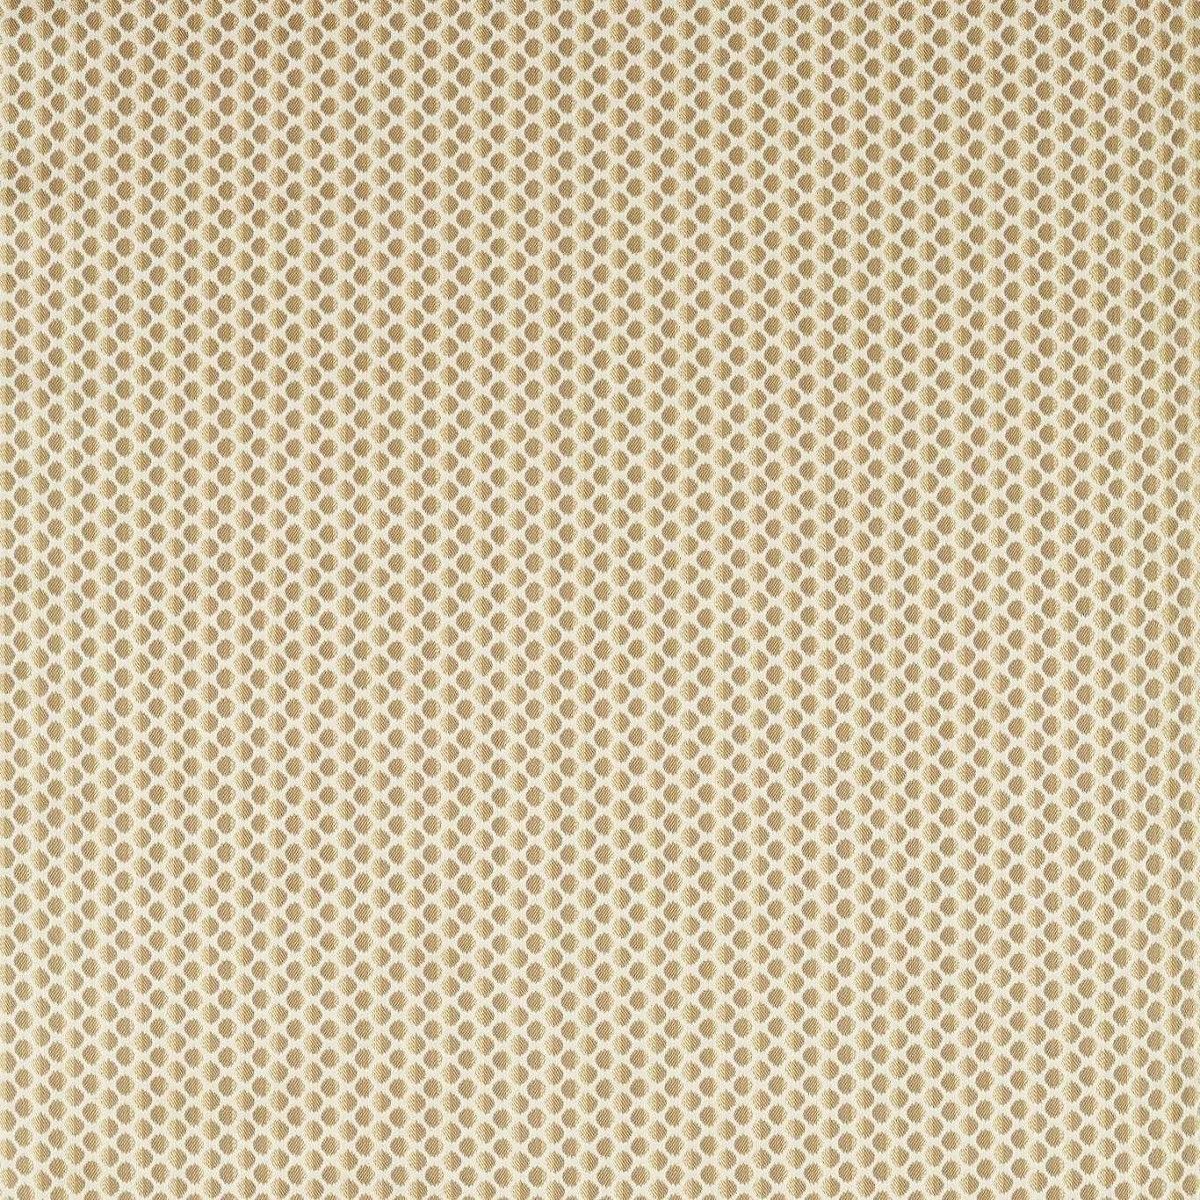 Seymour Spot Gold Fabric by Zoffany